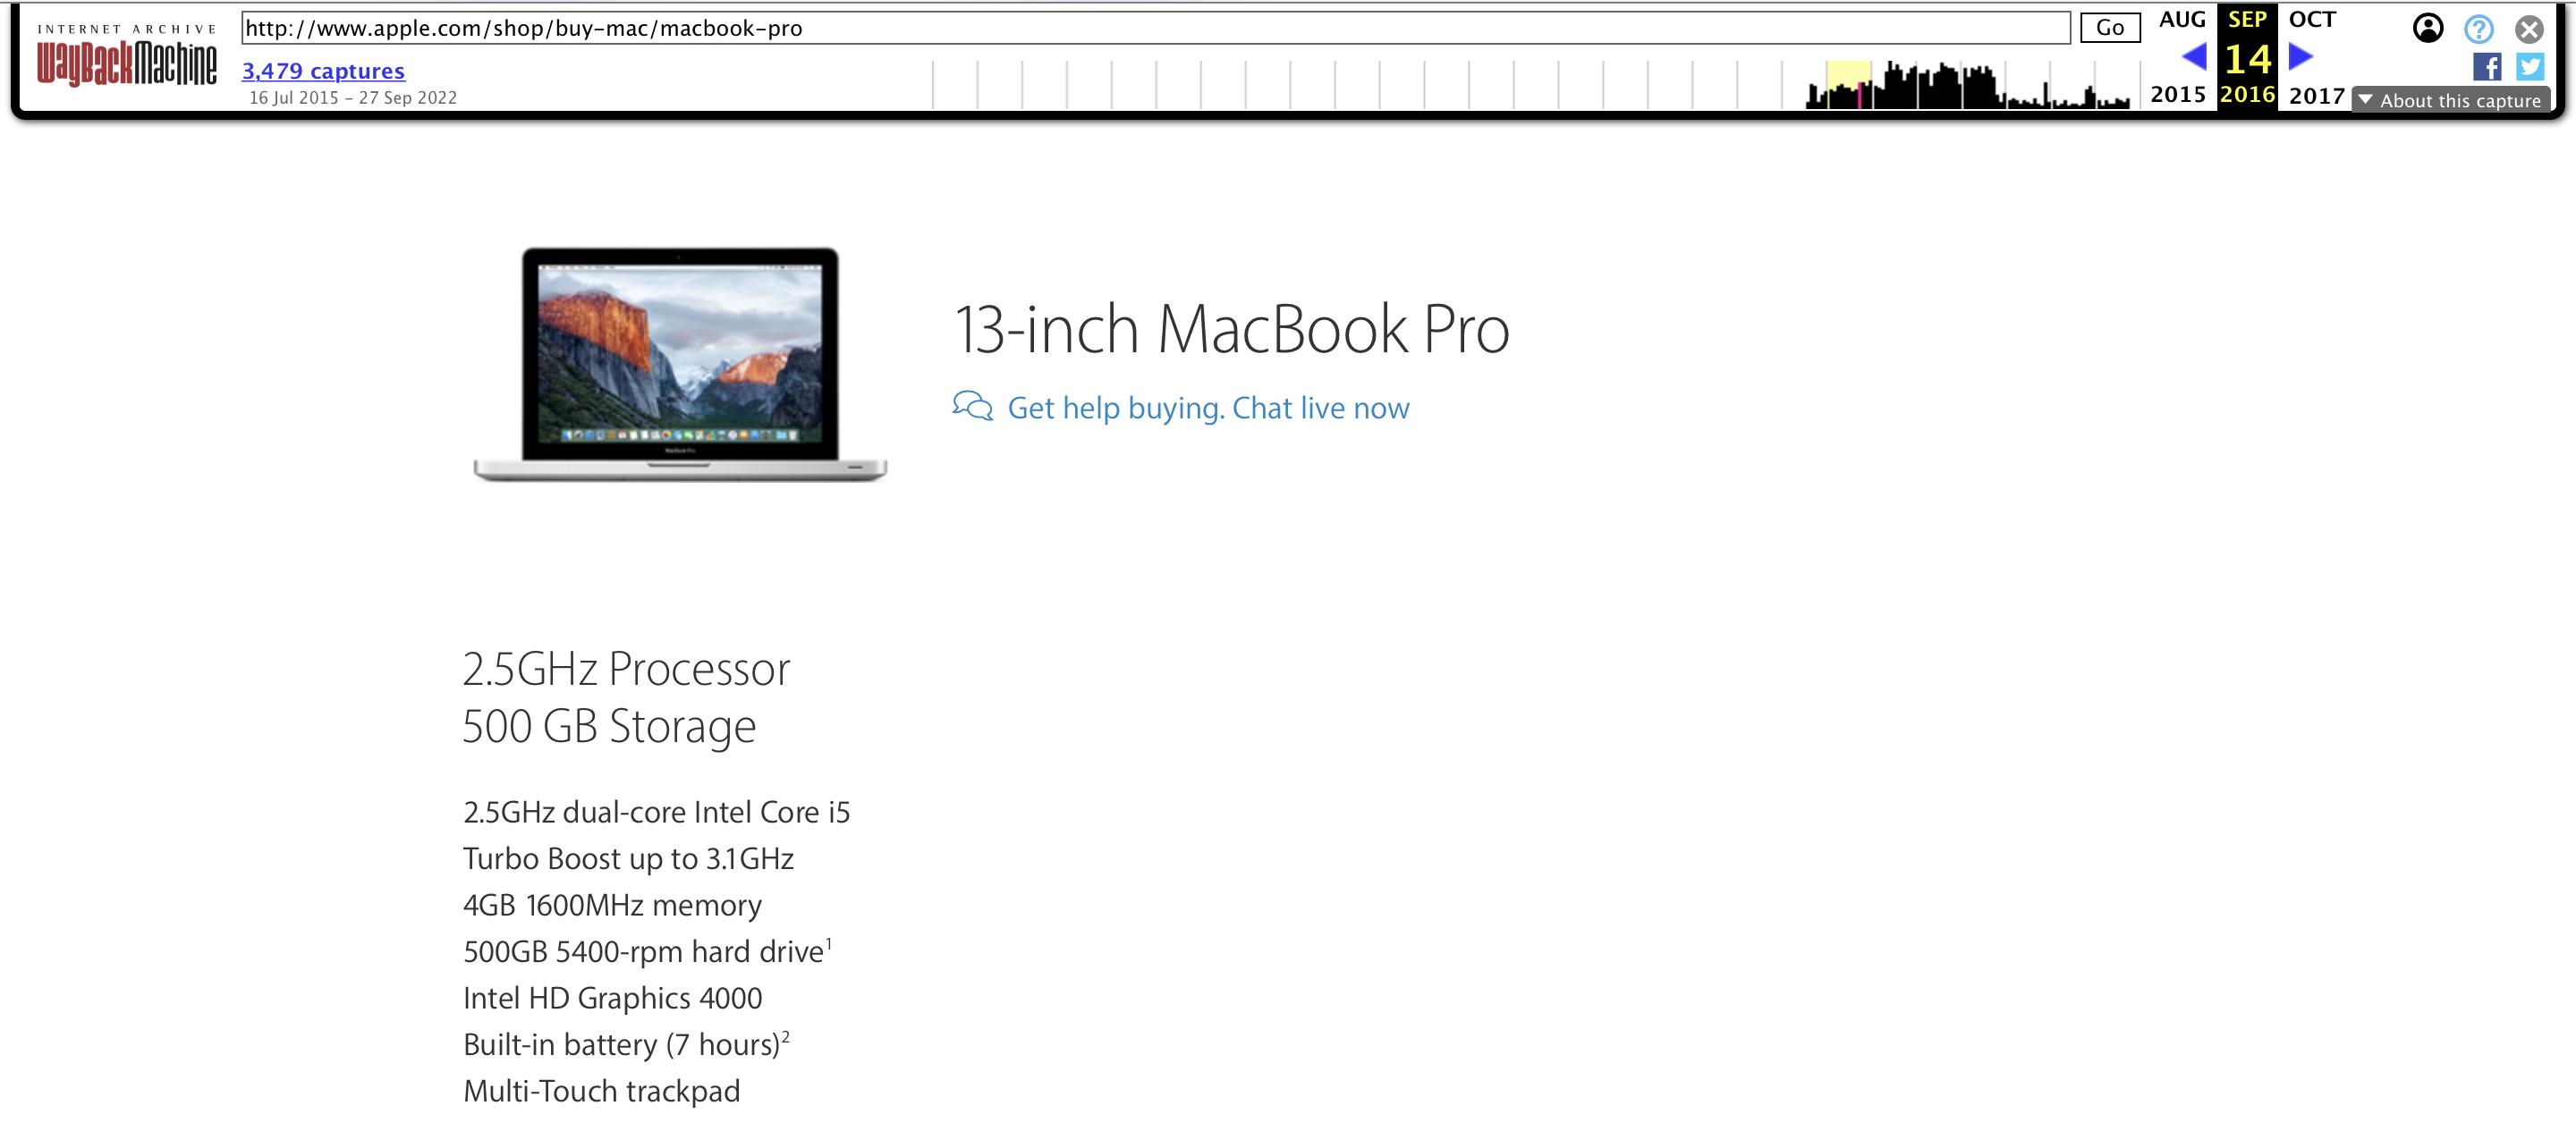 回首16 载，经典永流传：MacBook Pro 发展史-36氪